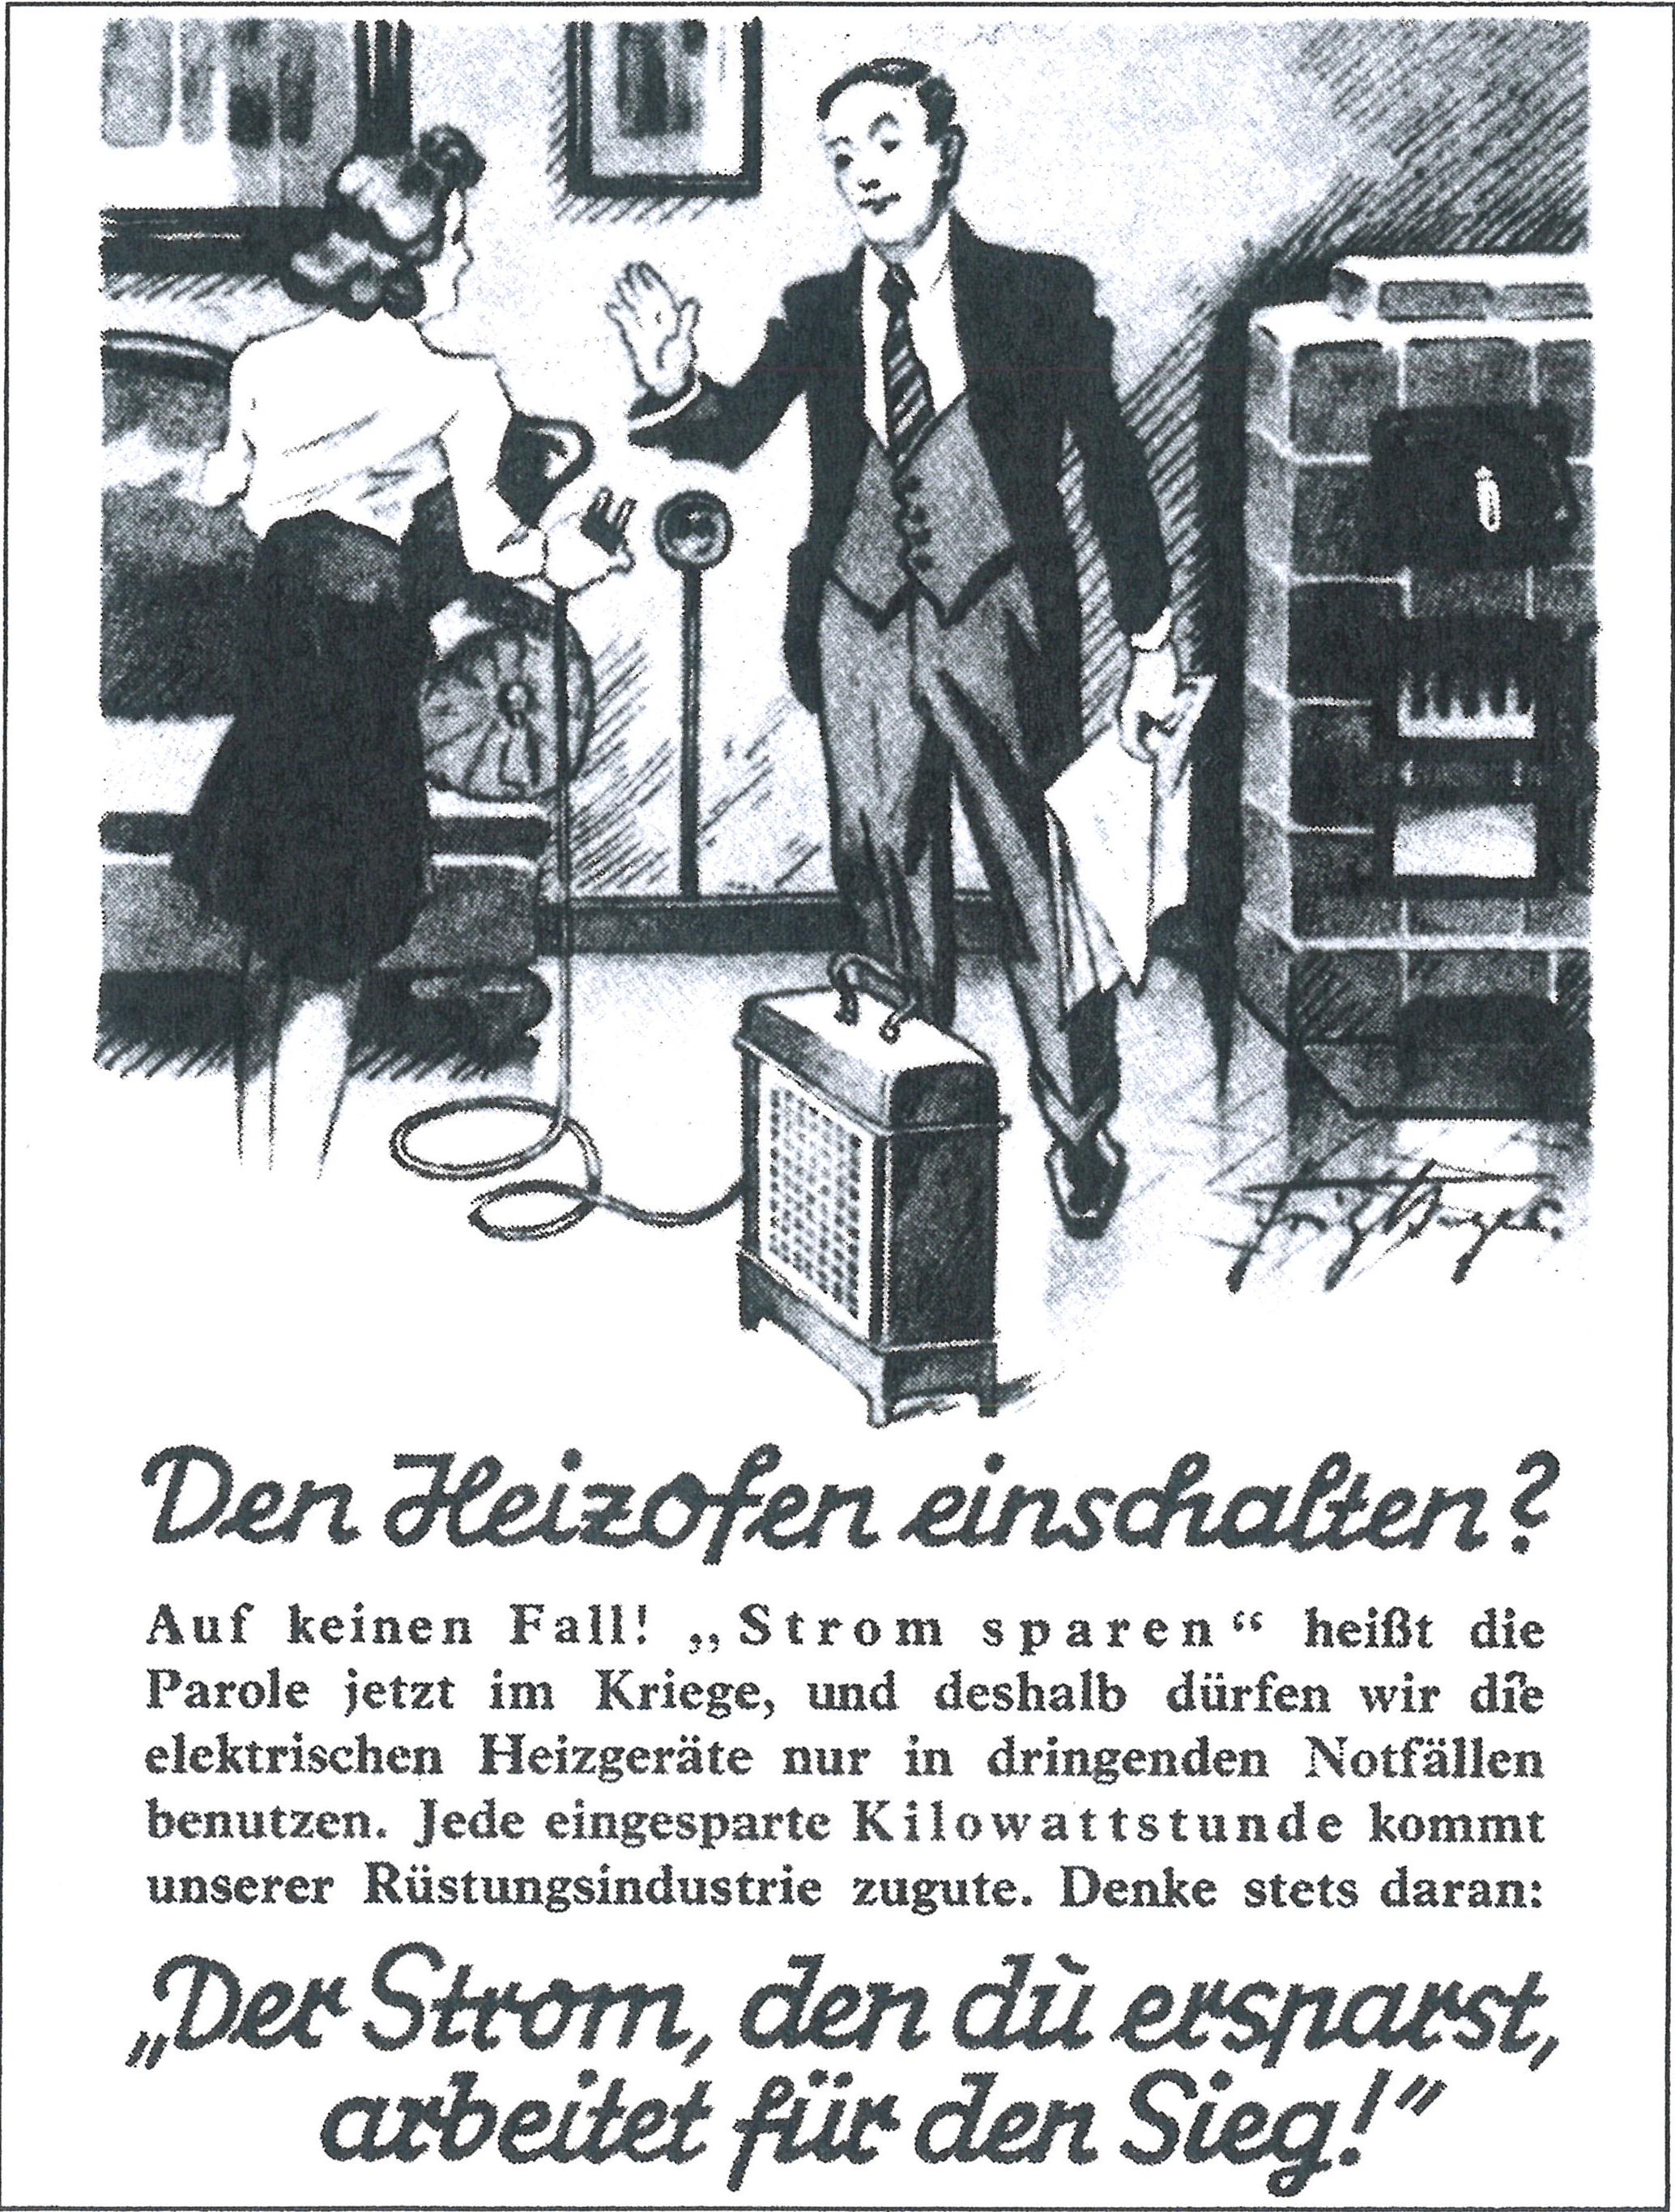 Figure 5: Newspaper advert to turn off electric heaters to save electricity, 1942. Source: Bezirksamt Charlottenburg von Berlin. Stadt unter Strom. Zur Kulturgeschichte der Elektrifizierung. Berlin: Heimatmuseum Charlottenburg, 1990:48.